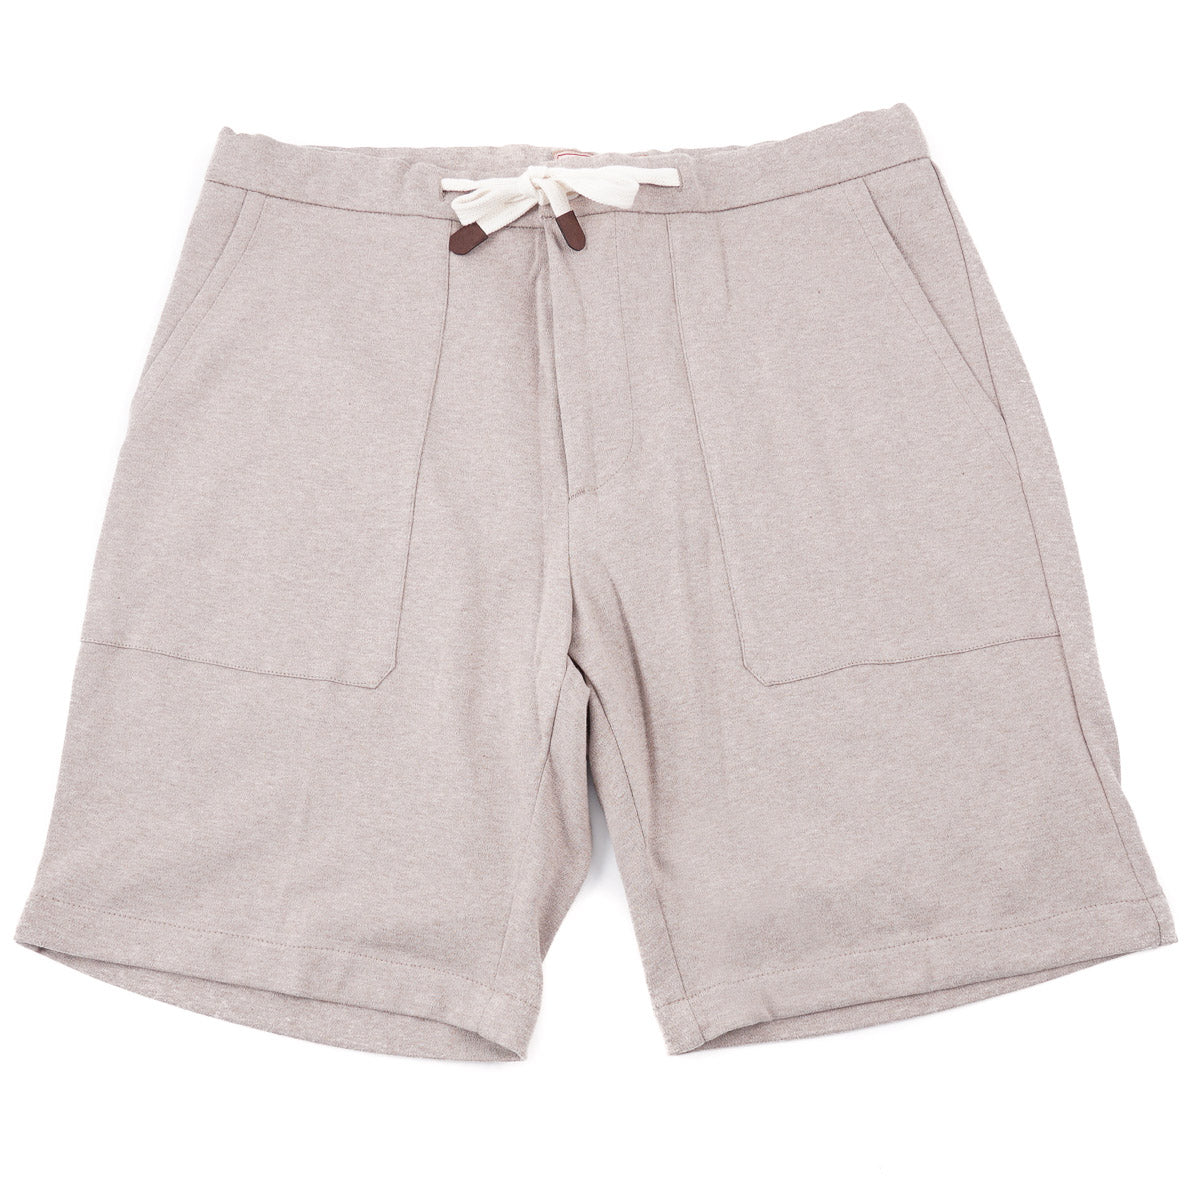 Marco Pescarolo Knit Jersey Cotton Shorts - Top Shelf Apparel